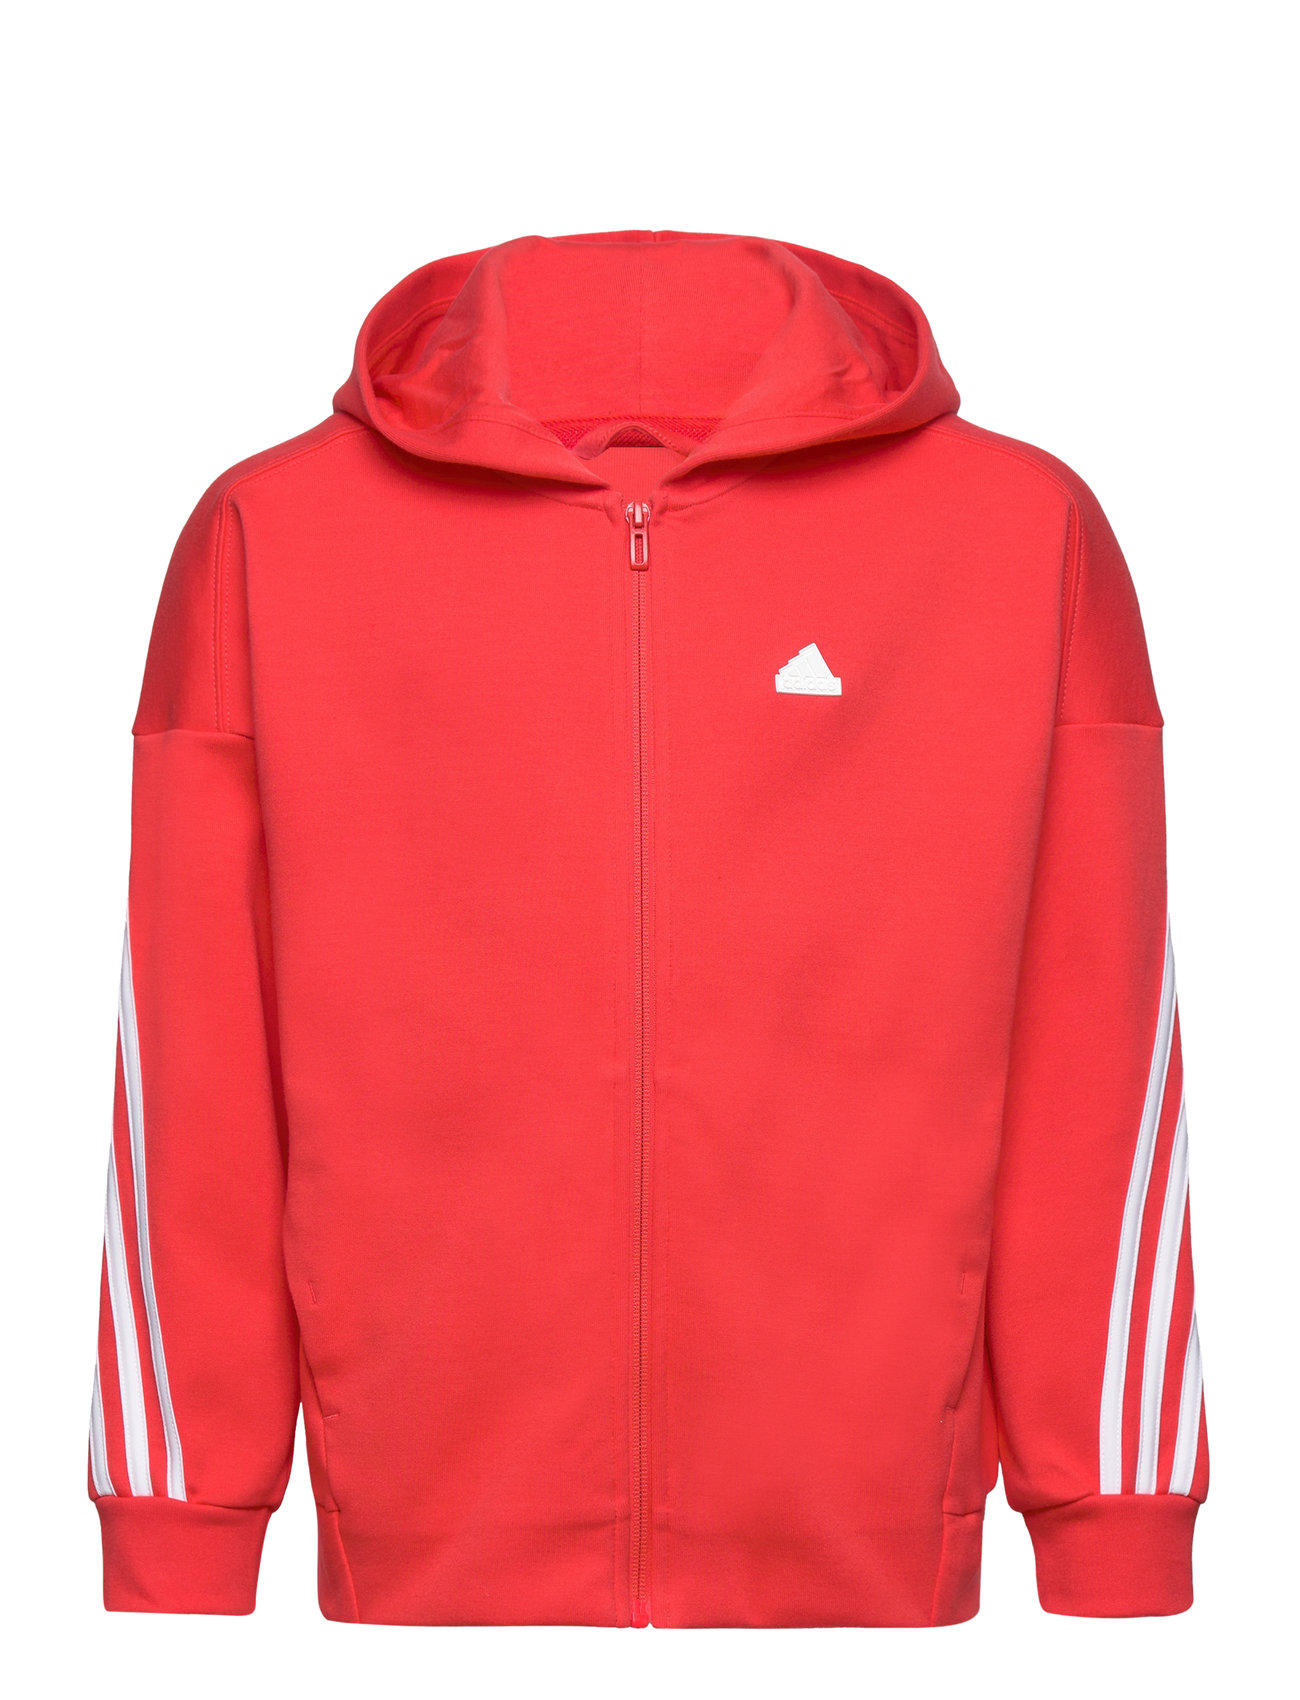 U Fi 3S Fz Hd Sport Sweat-shirts & Hoodies Hoodies Red Adidas Performance